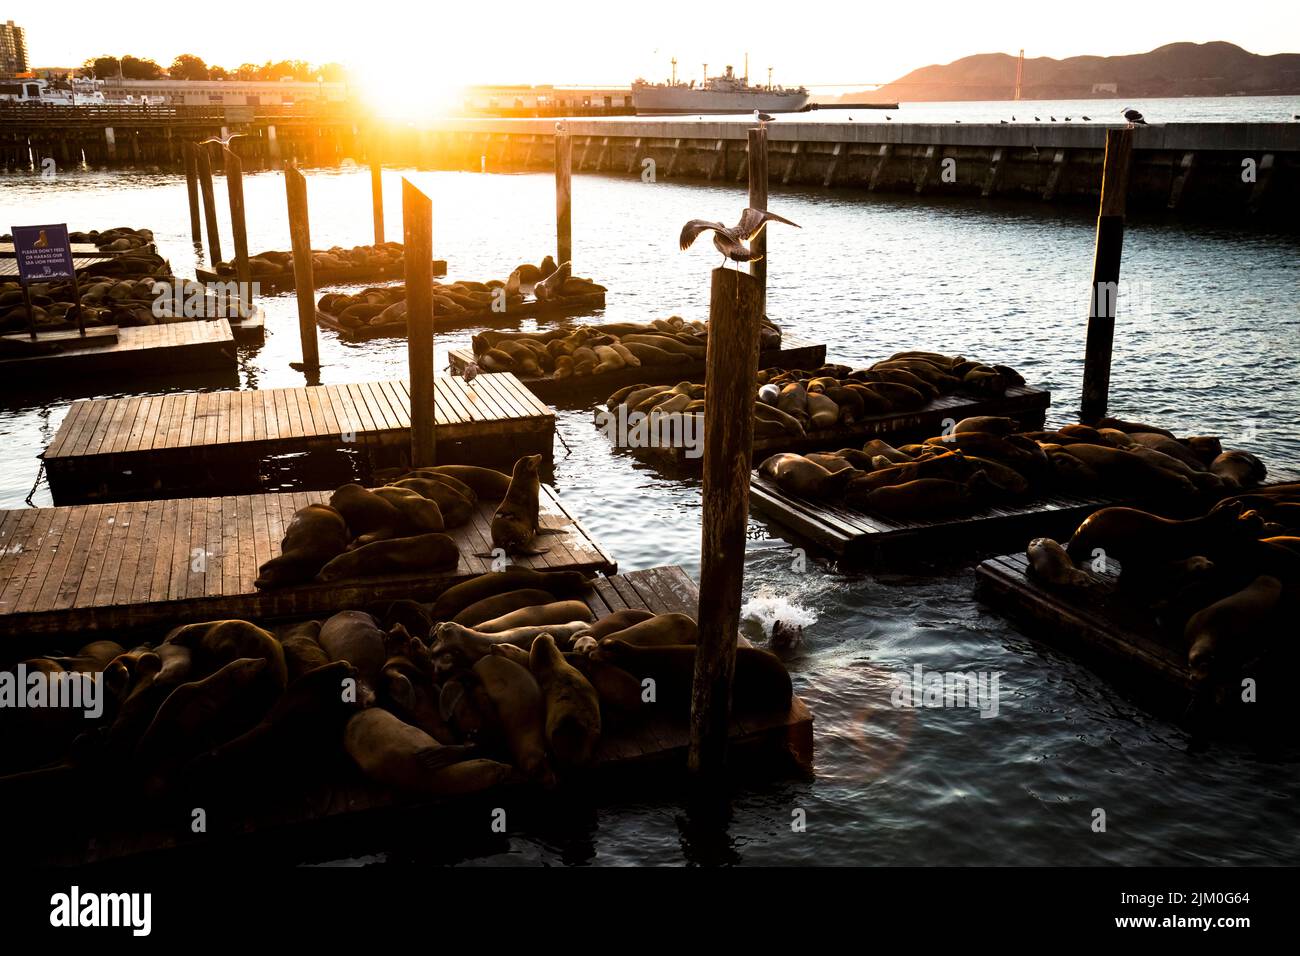 La infame Pier 39 en San Francisco tiene que durante muchos años ha sido un refugio para estos lobos marinos de California. Como están protegidos de esta manera, el Foto de stock